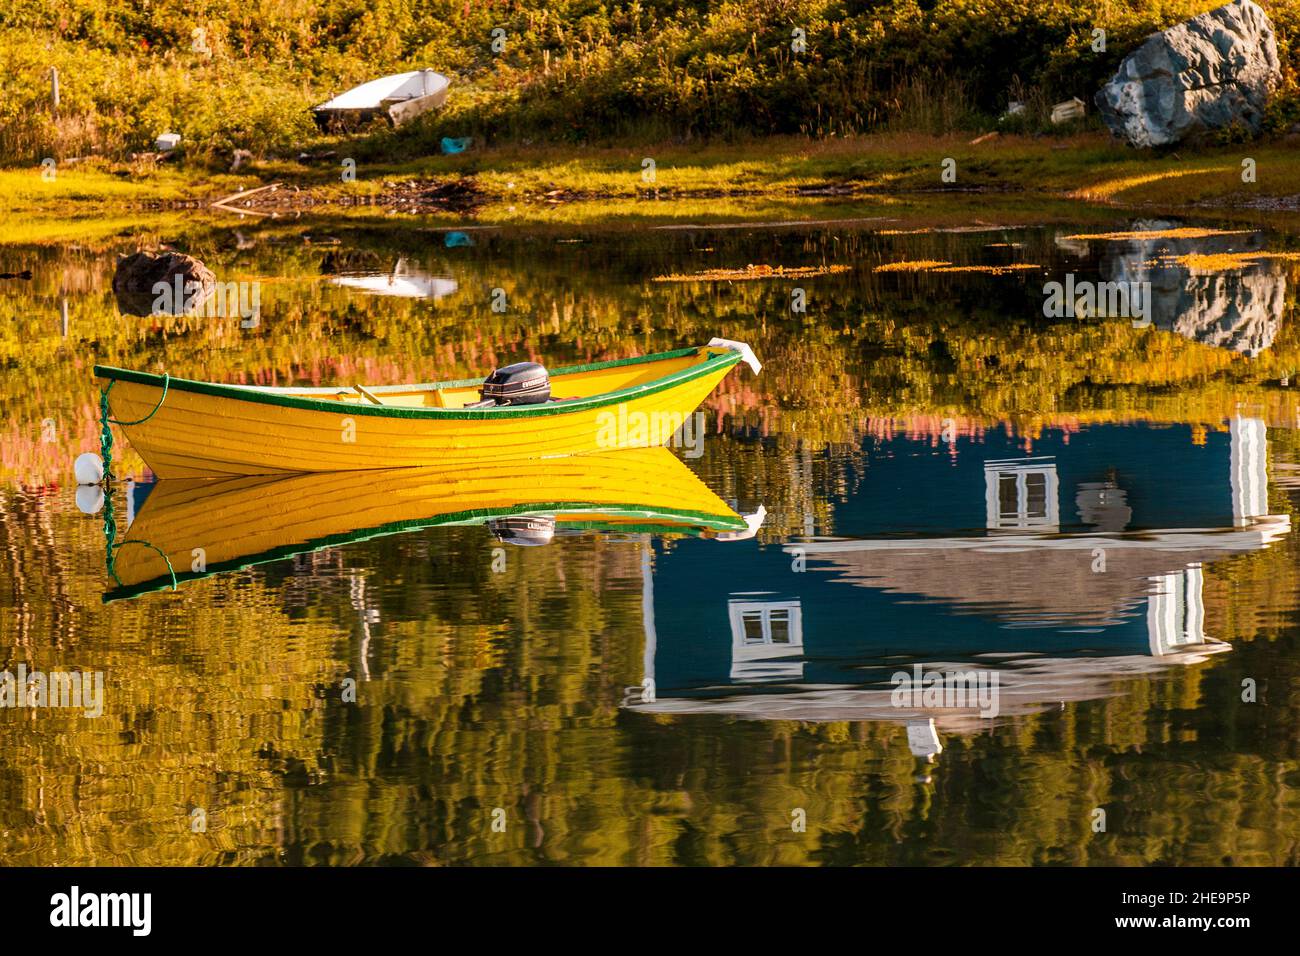 Bateau de pêche dans le petit village de Renevers Cappahayden, péninsule d'Avalon, Terre-Neuve, Canada. Banque D'Images